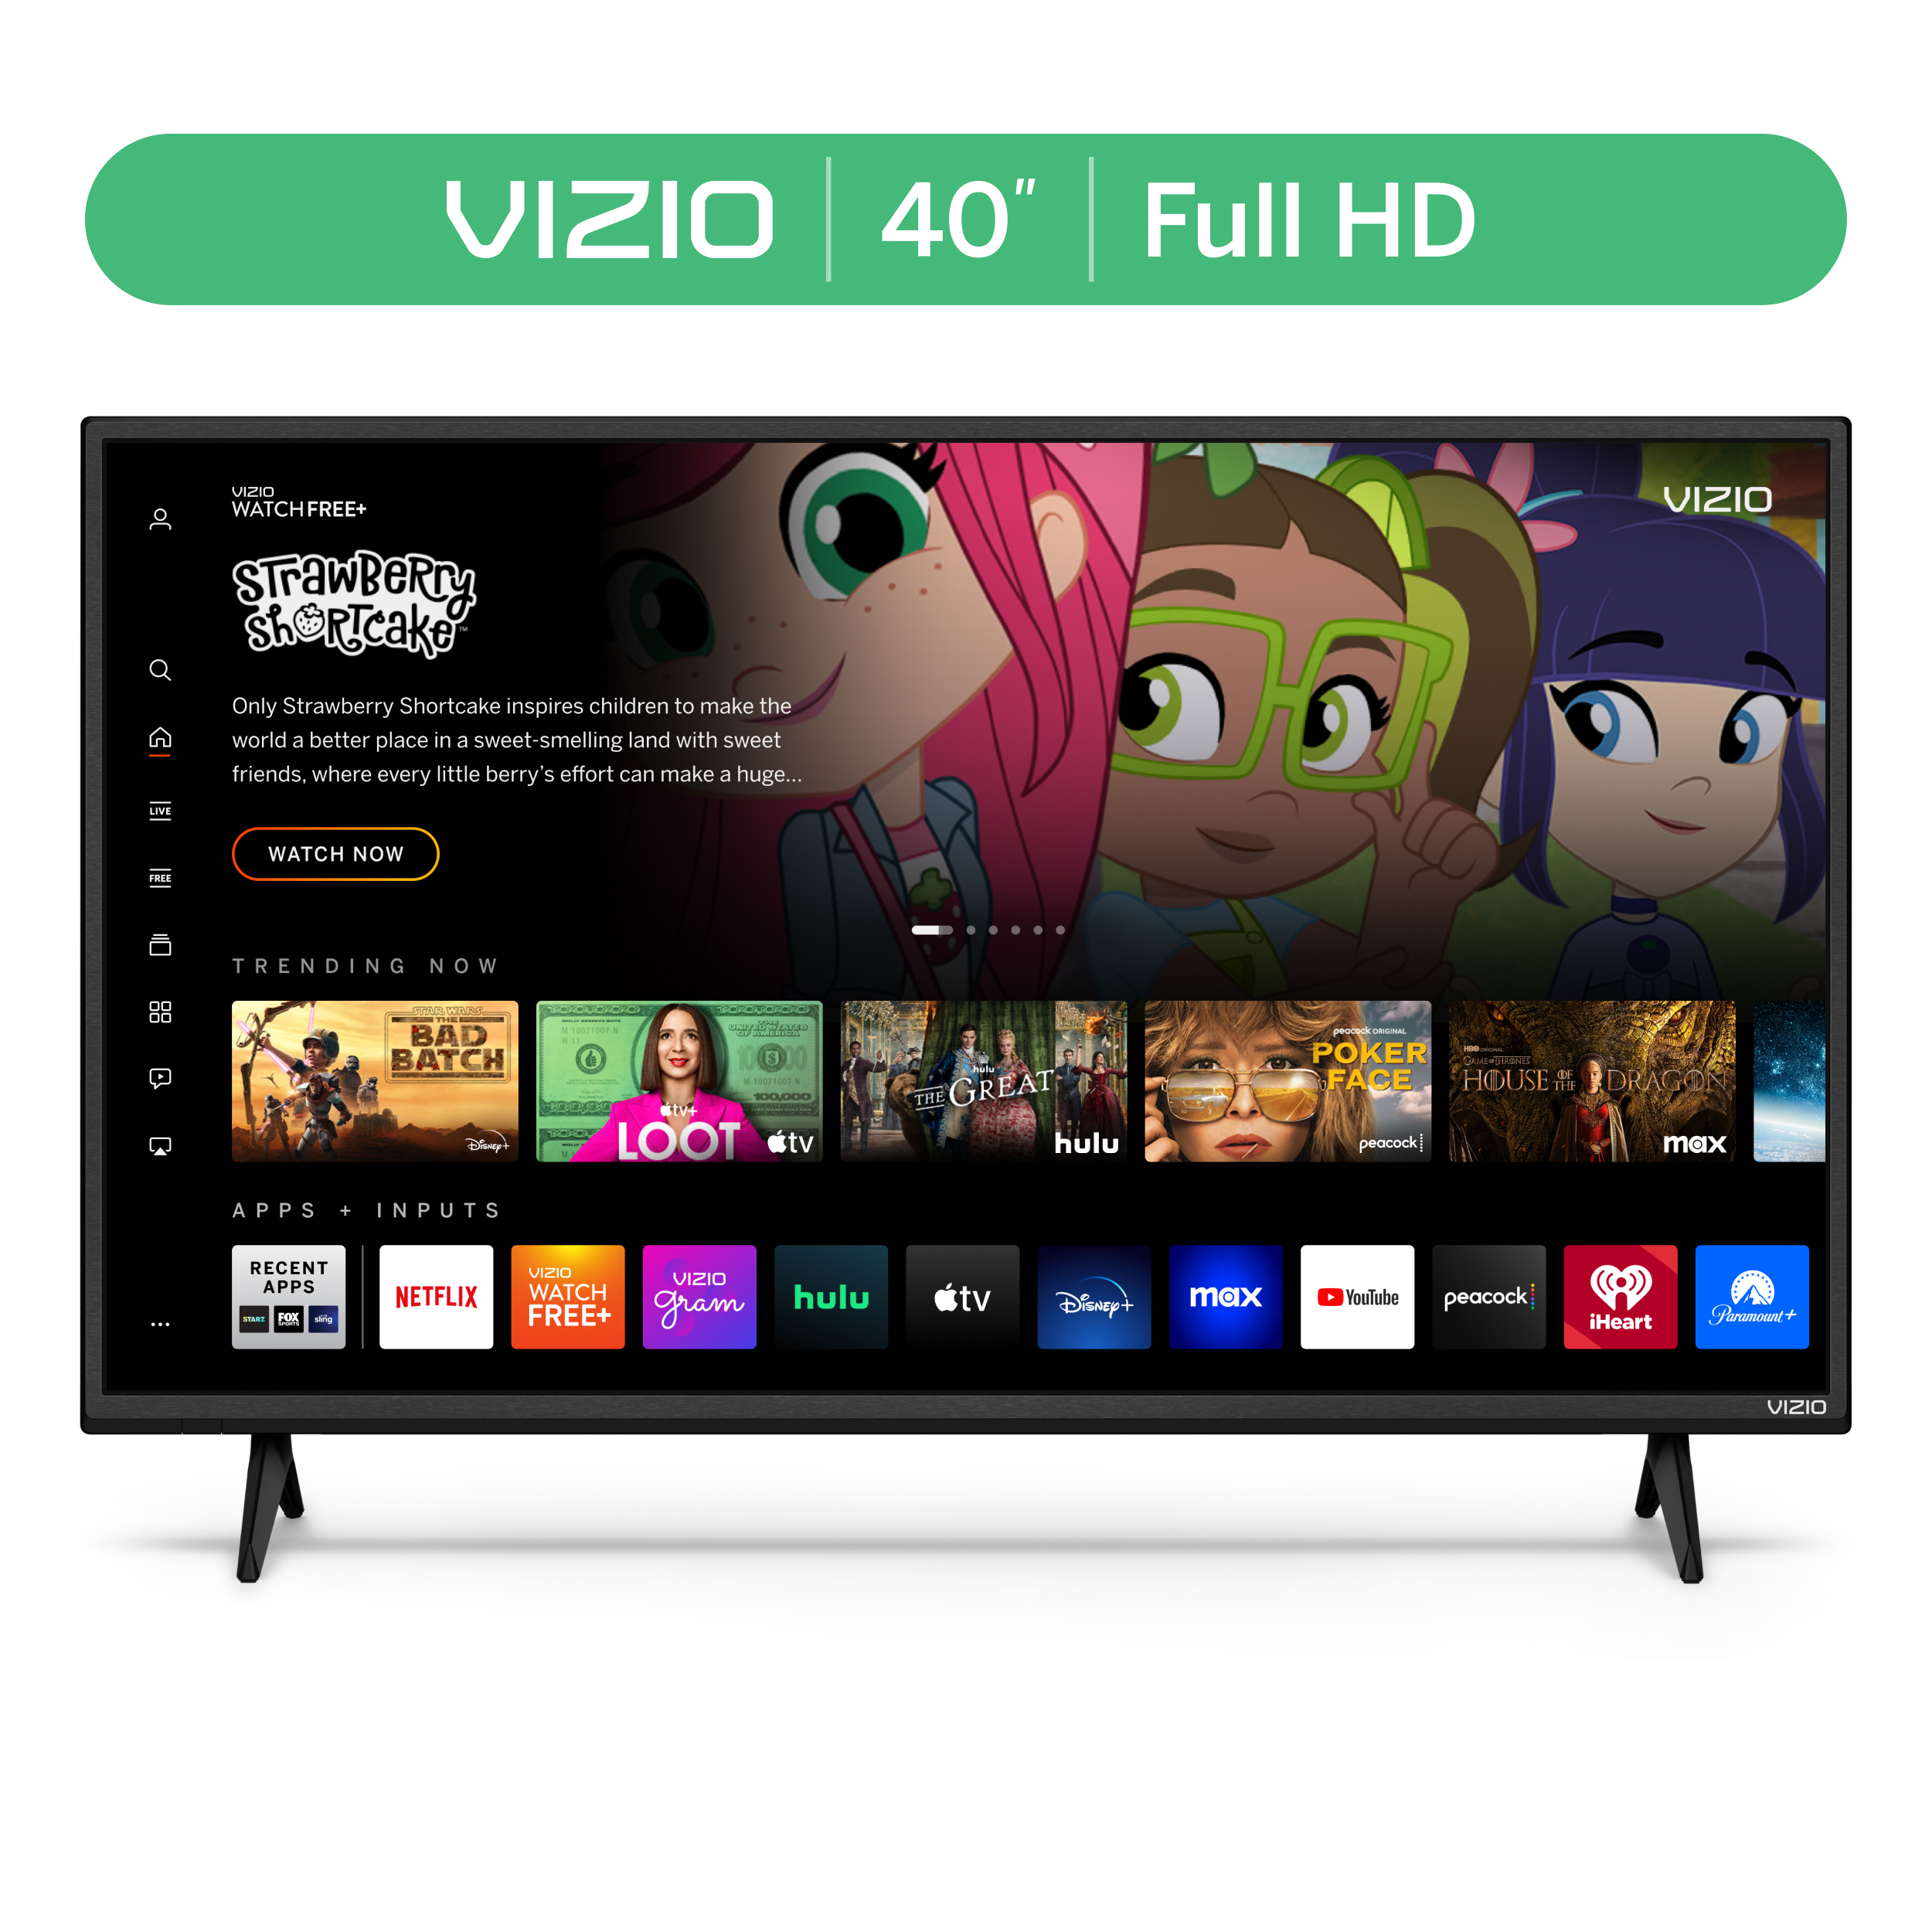 VIZIO 40" Class D-Series FHD LED Smart TV D40f-J09 - image 1 of 18